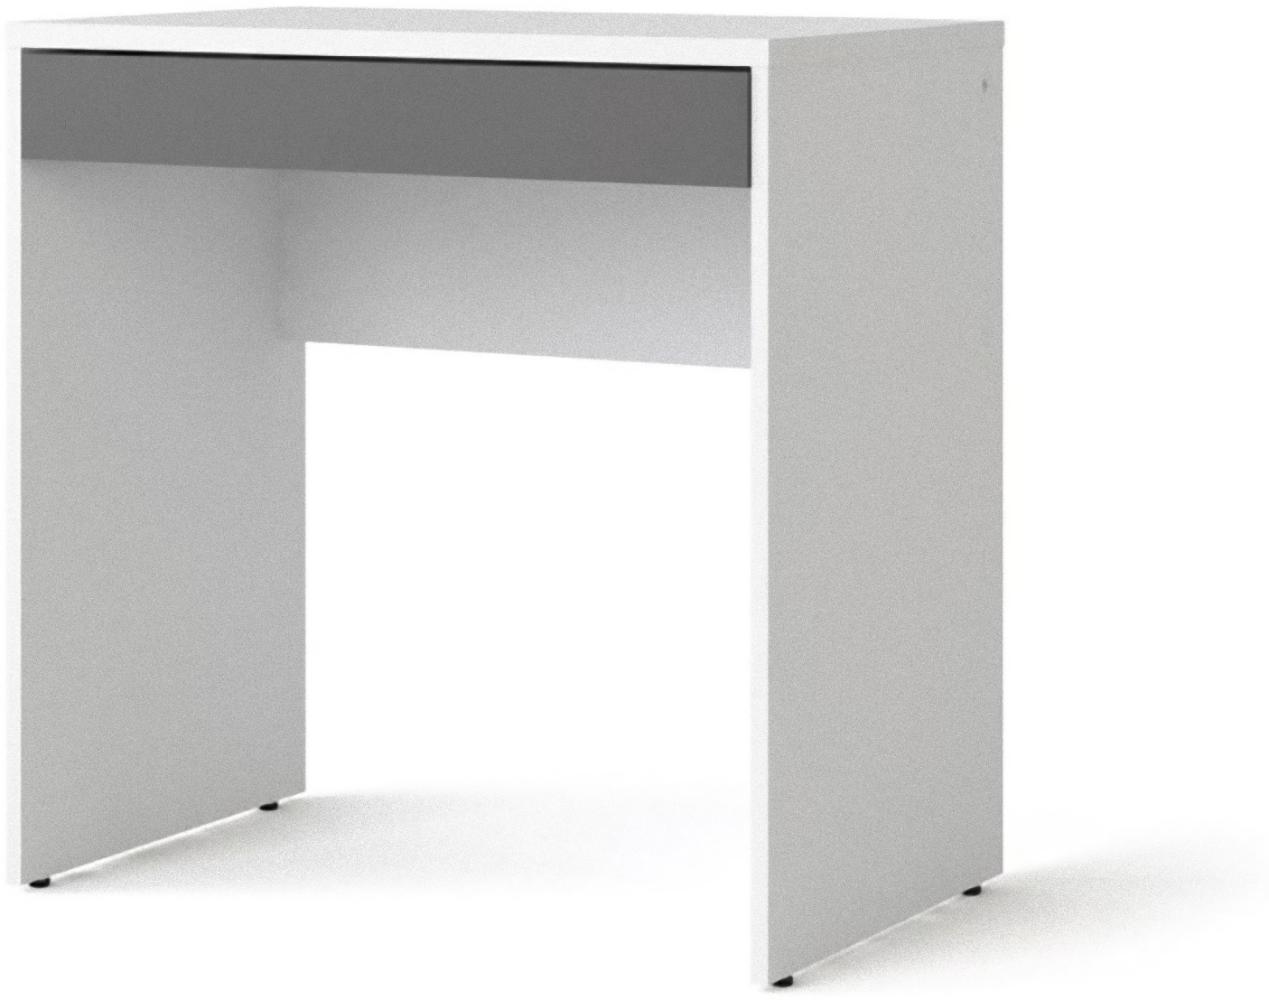 'Fula' Schreibtisch, weiß/grau, 76,6 x 48,2 x 74,6 cm Bild 1